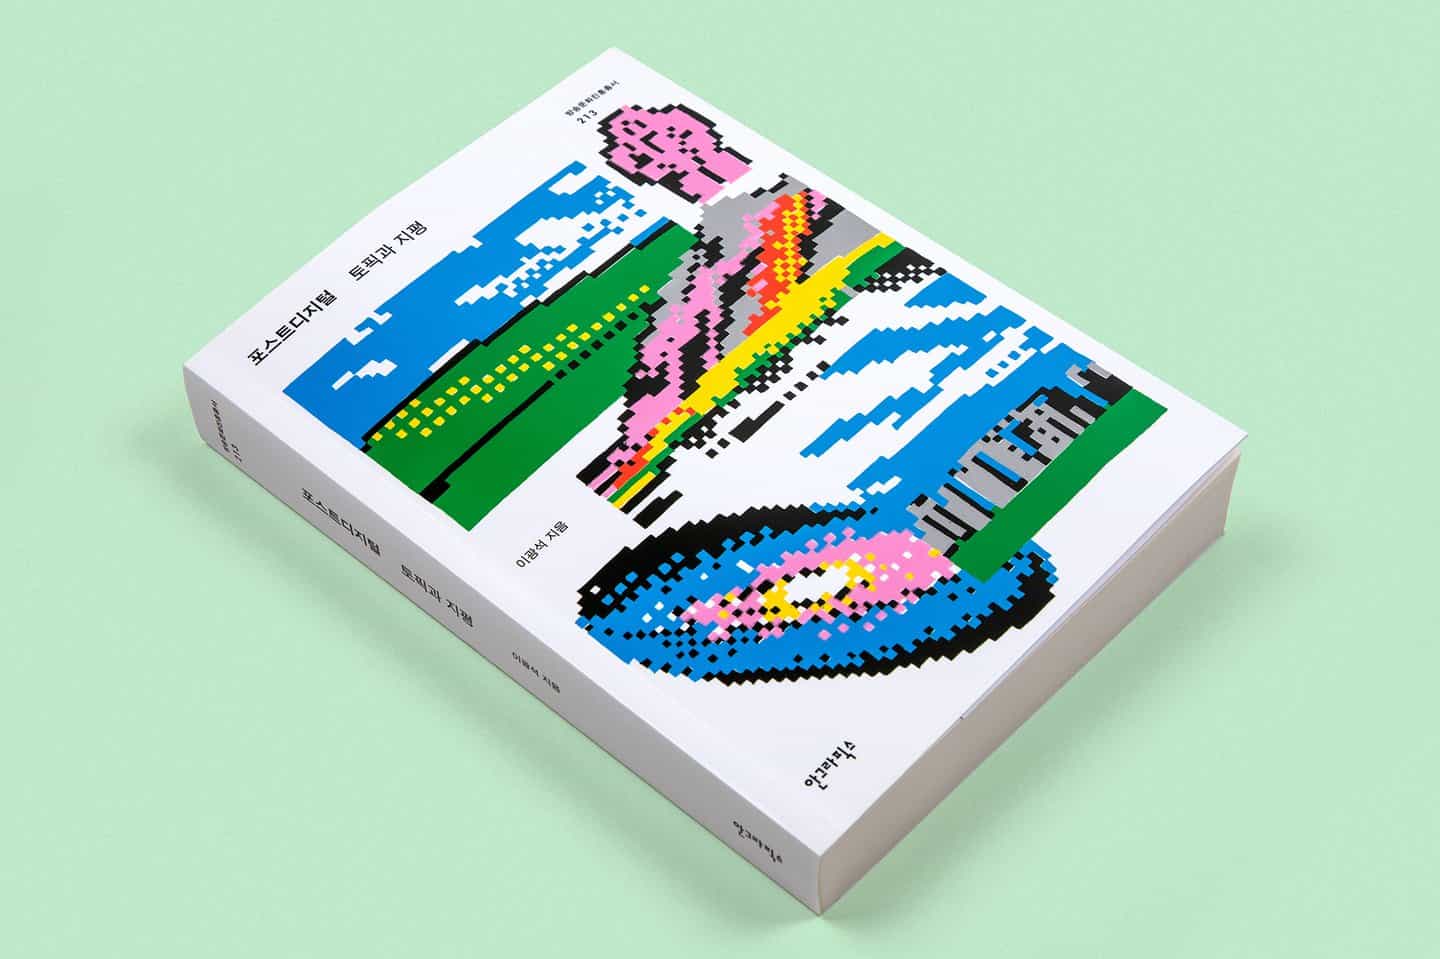 Bowyer: Postdigital — tema y horizonte diseño de libros (Copyright © Bowyer, 2021)